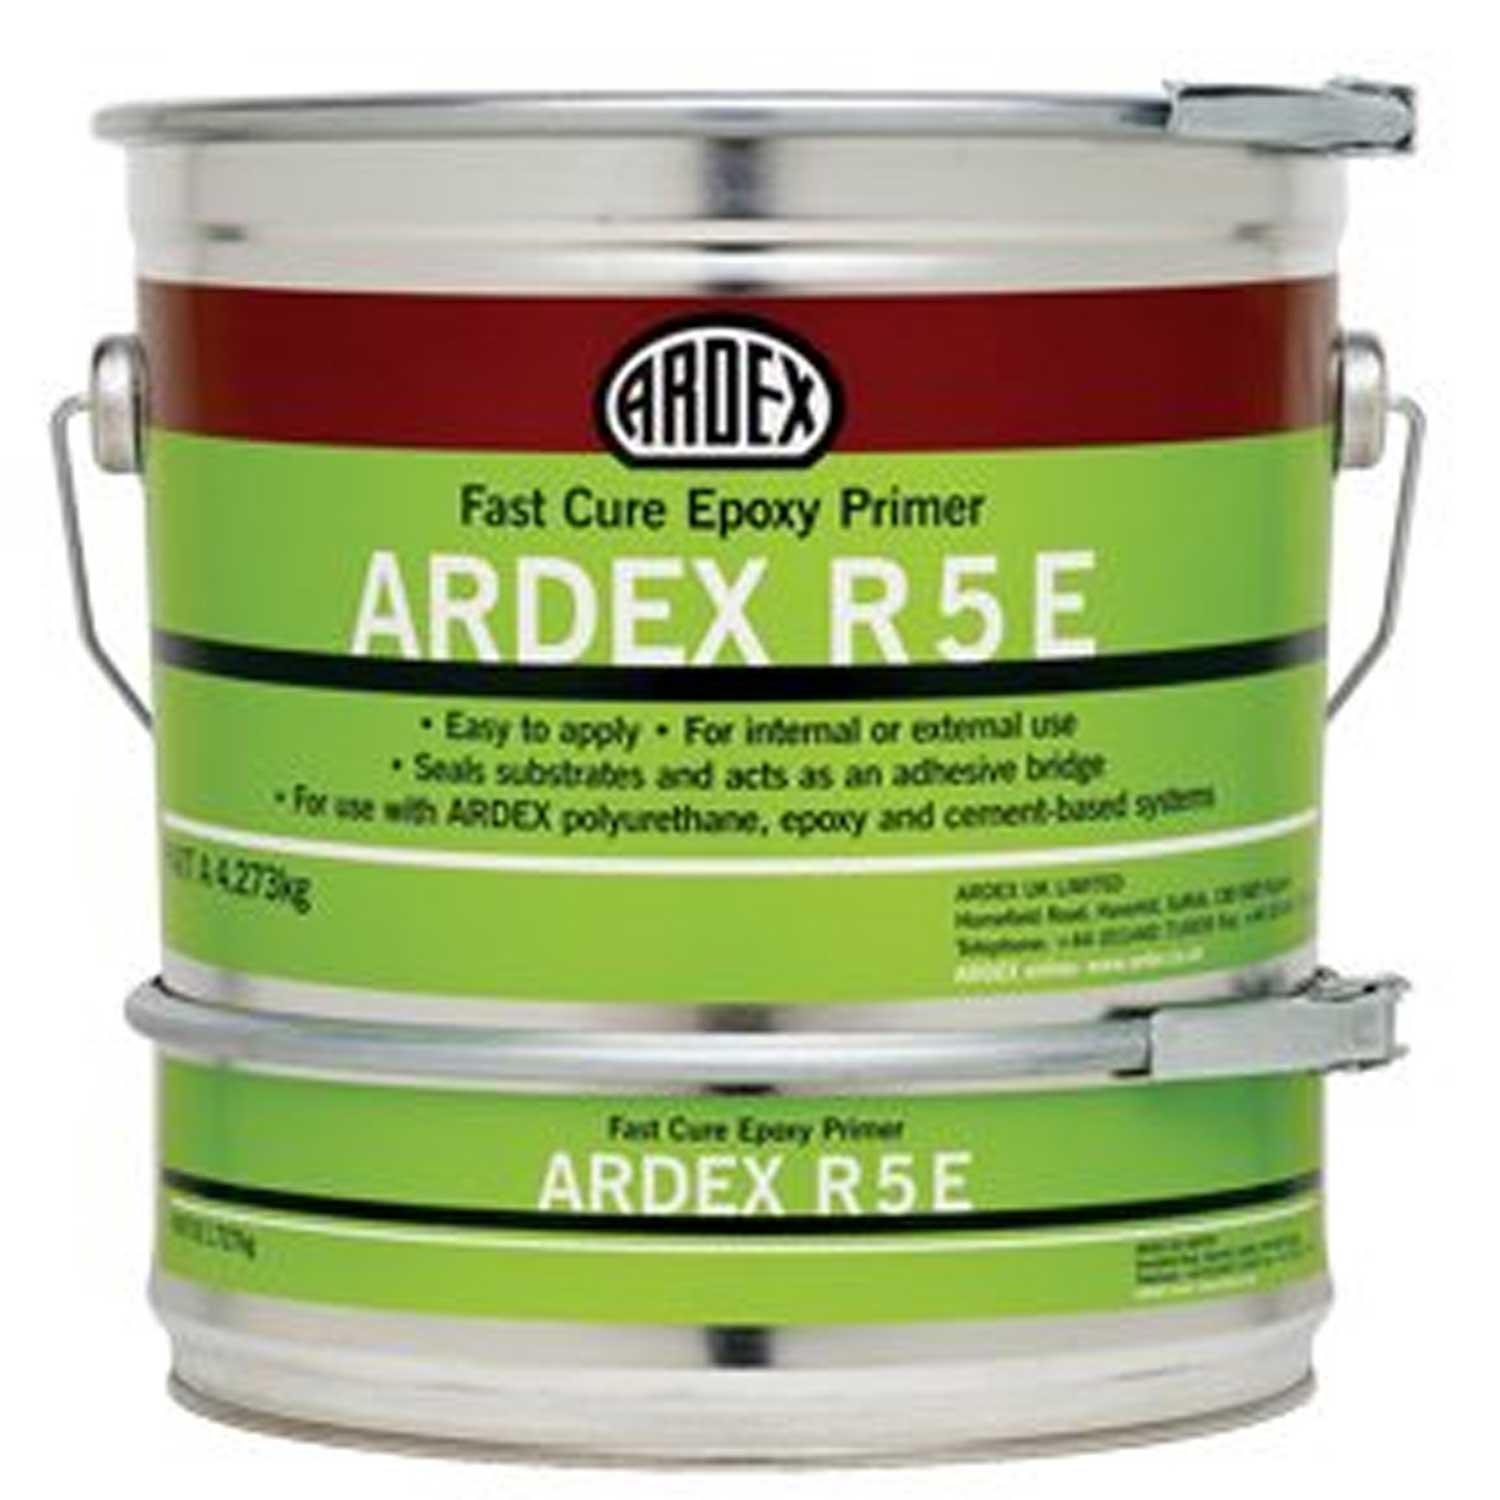 Ardex R5E Epoxy Primer 6 kg Fast Cure